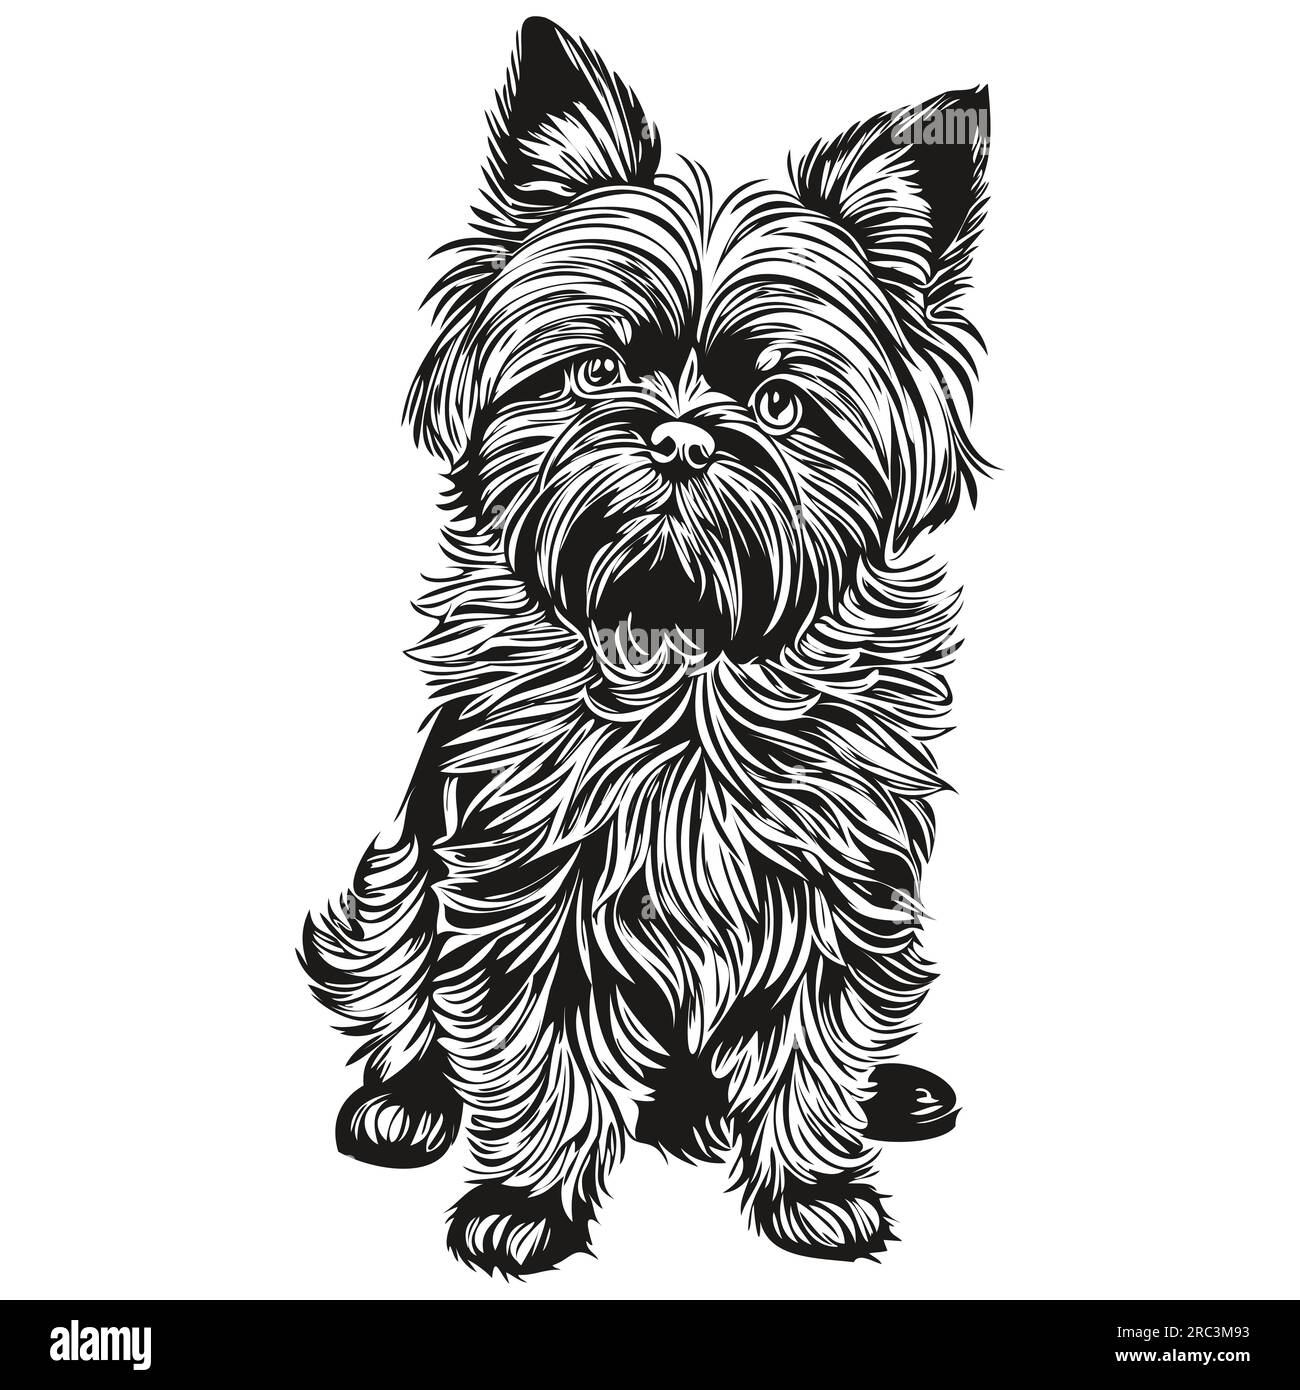 Affenpinscher chien gravé portrait vectoriel, dessin vintage de dessin animé visage en dessin d'esquisse noir et blanc Illustration de Vecteur